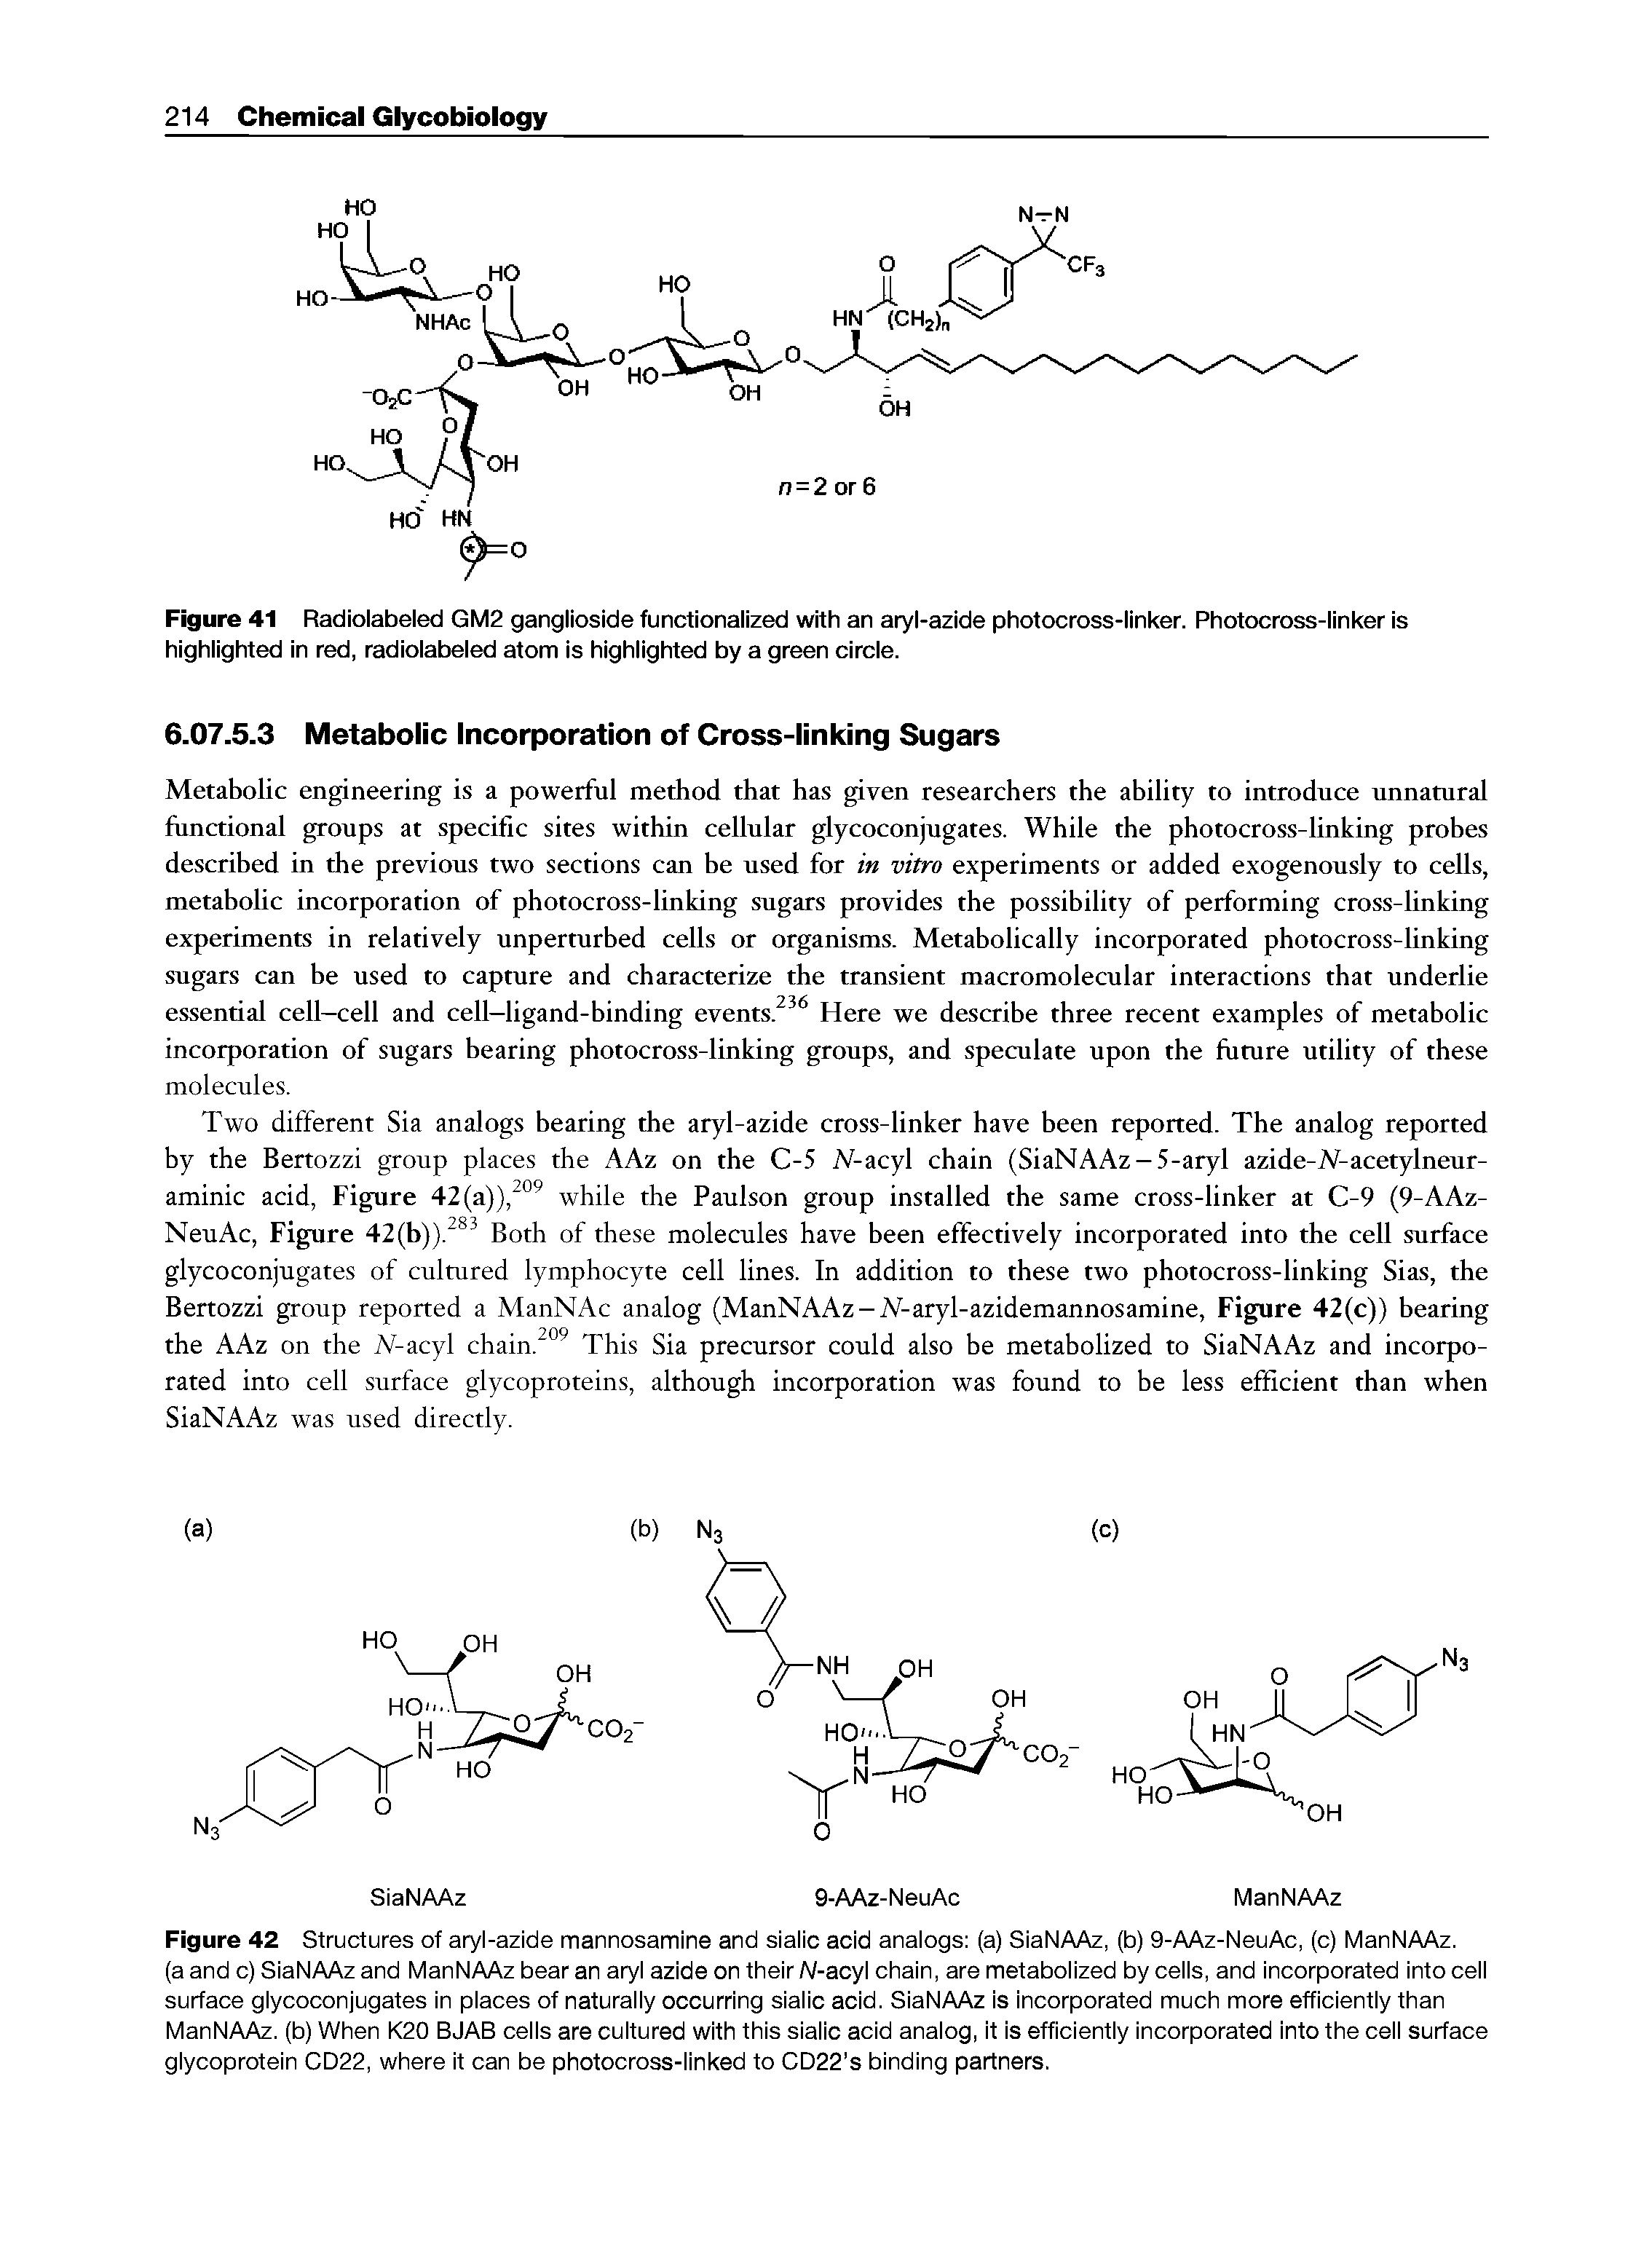 Figure 42 Structures of aryl-azide mannosamine and sialic acid analogs (a) SiaNAAz, (b) 9-AAz-NeuAc, (c) ManNAAz.